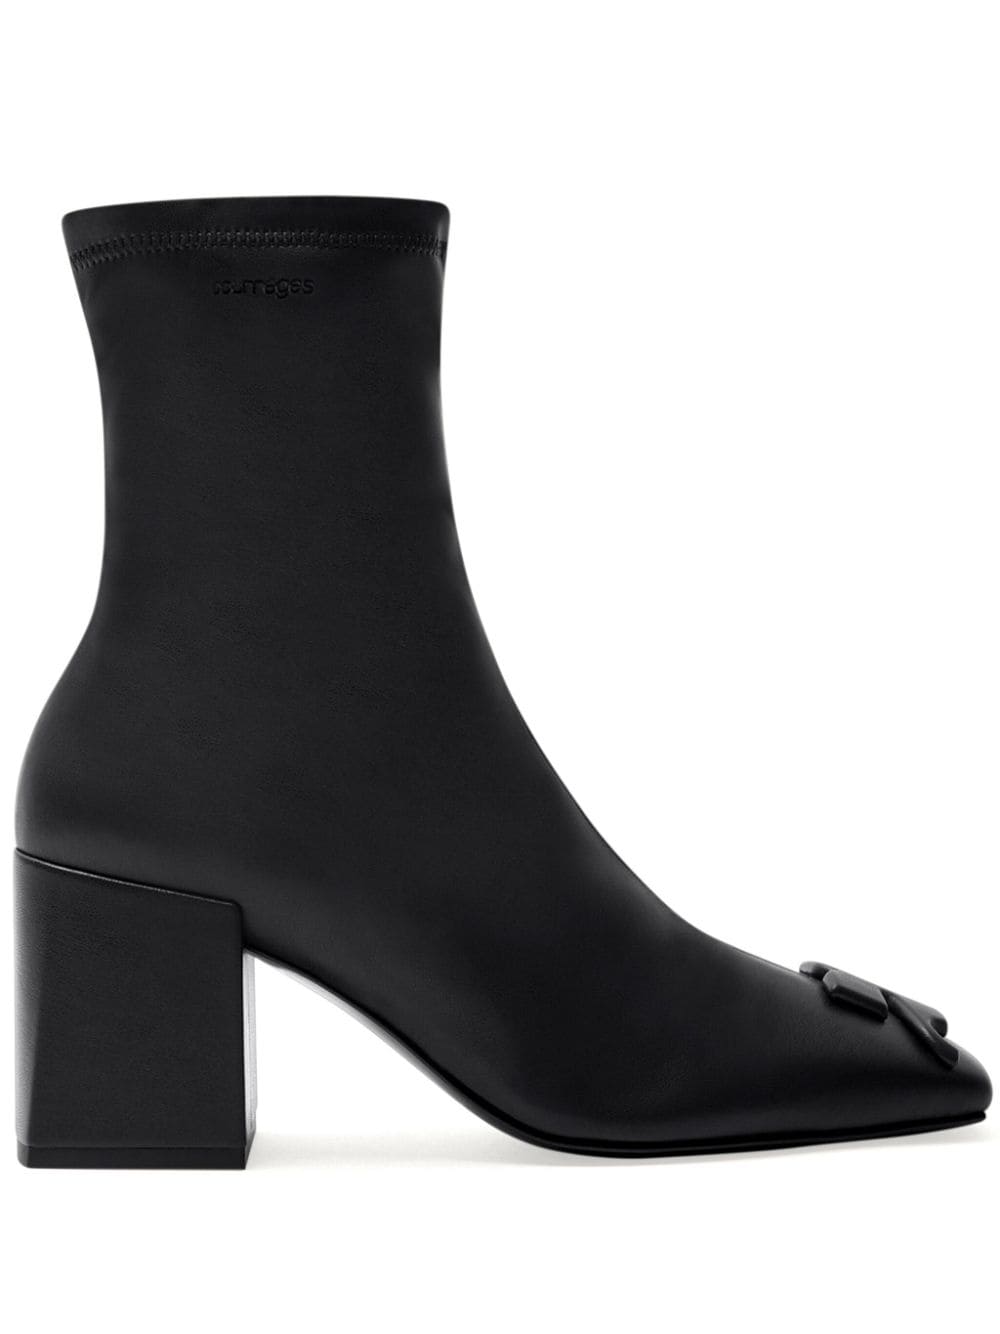 Courrèges Reedition leather boots - Black von Courrèges